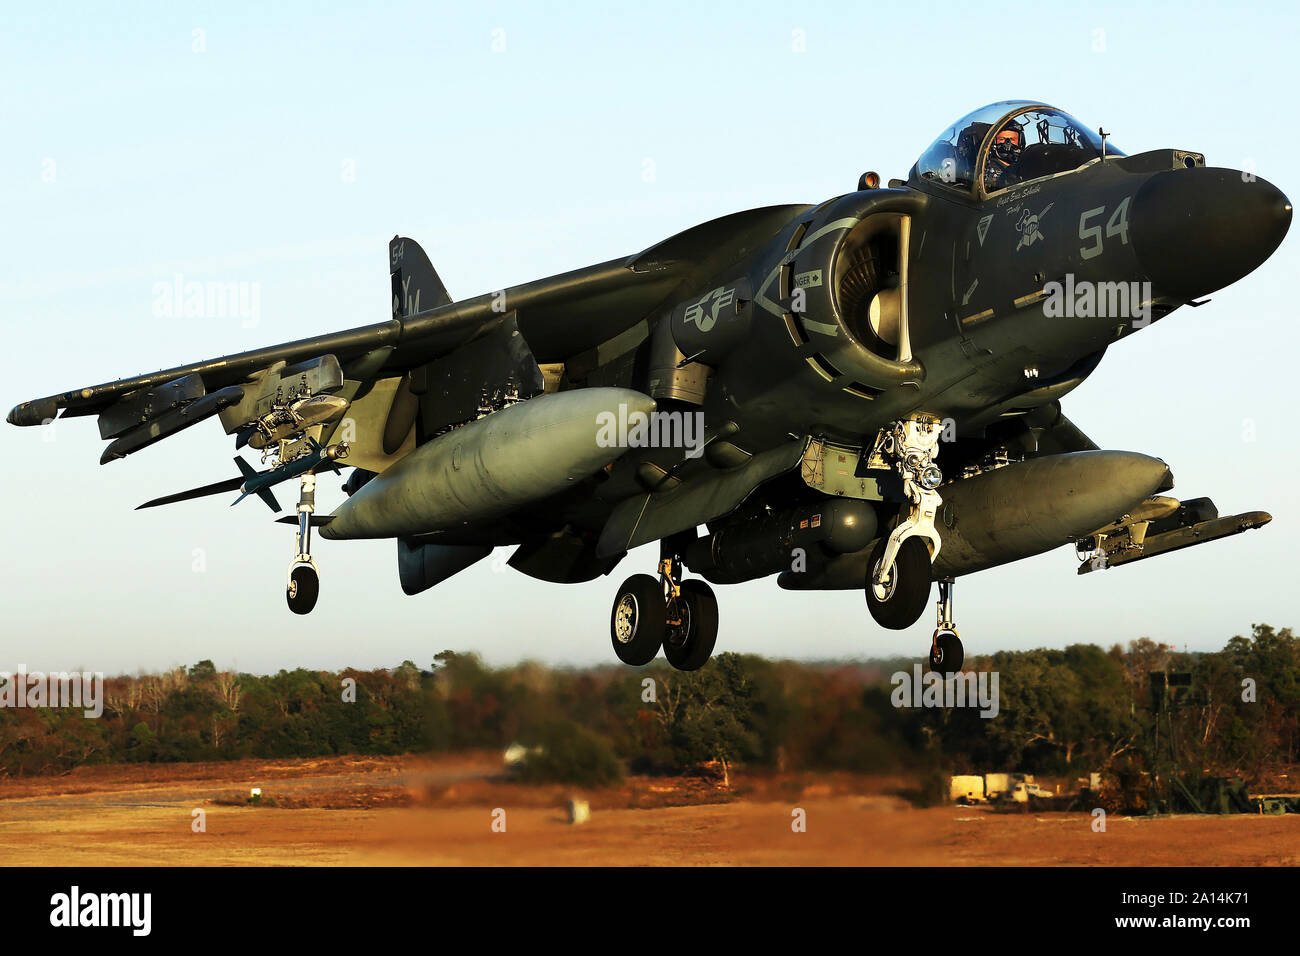 An AV-8B Harrier landing. Stock Photo